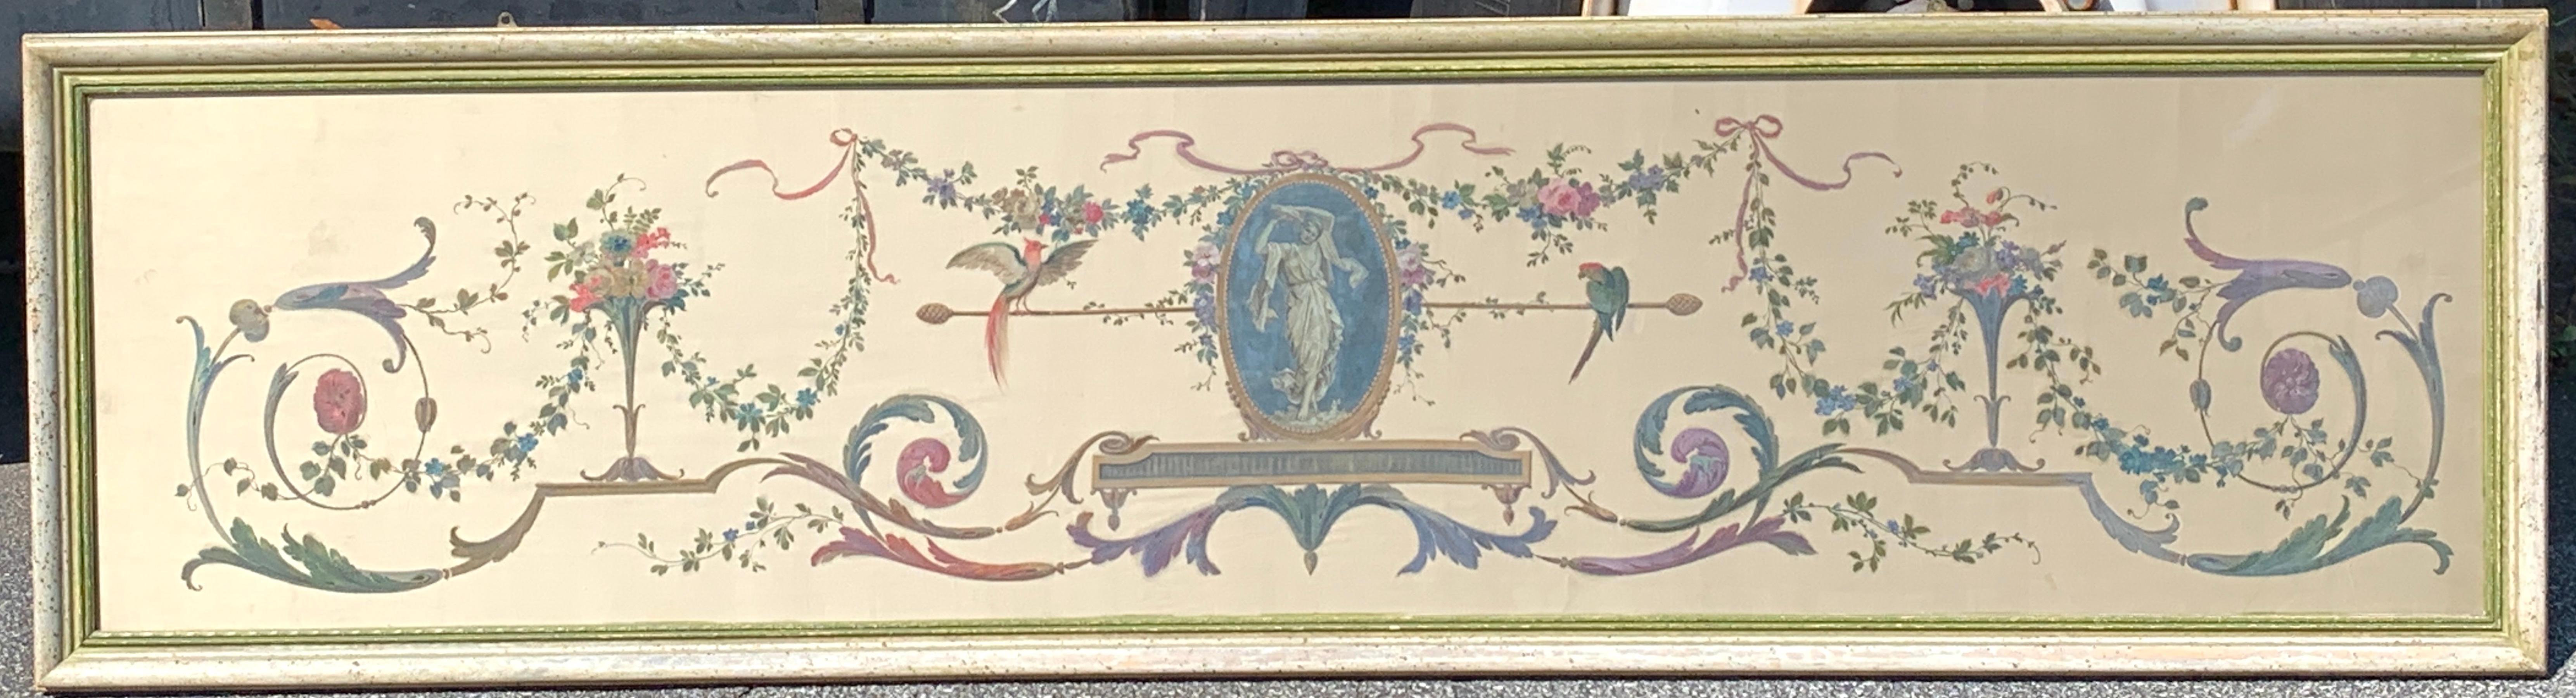 Panneau d'architecture intérieure peint de style Robert Adam, encadré
de taille substantielle, peint à la main sur de la soie fine, décoration typique d'Adam bien exécutée dans de belles couleurs sourdes, parfait à suspendre au-dessus d'une